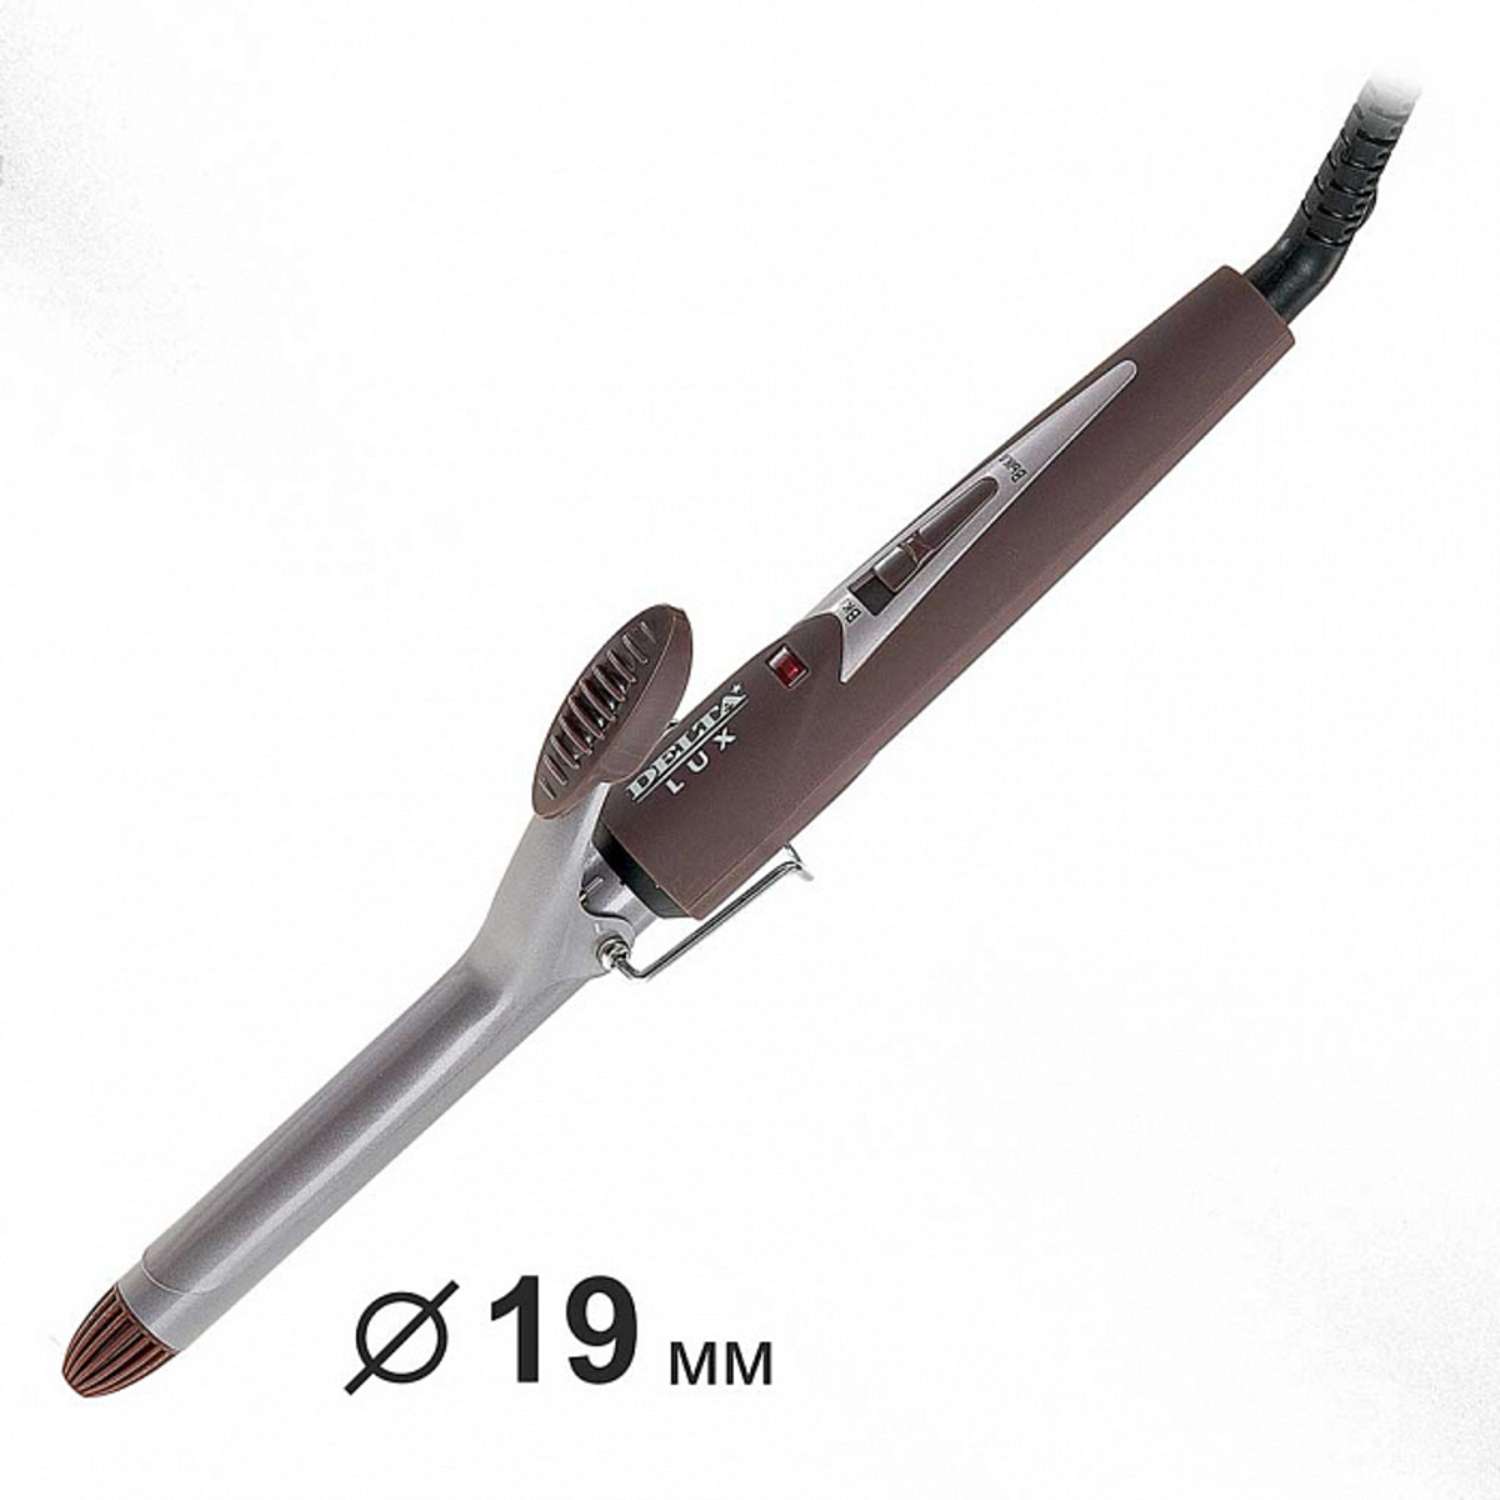 Стайлер для завивки волос Delta Lux DL-0630 коричневый керамическое покрытие d 19 мм 25 Вт - фото 1